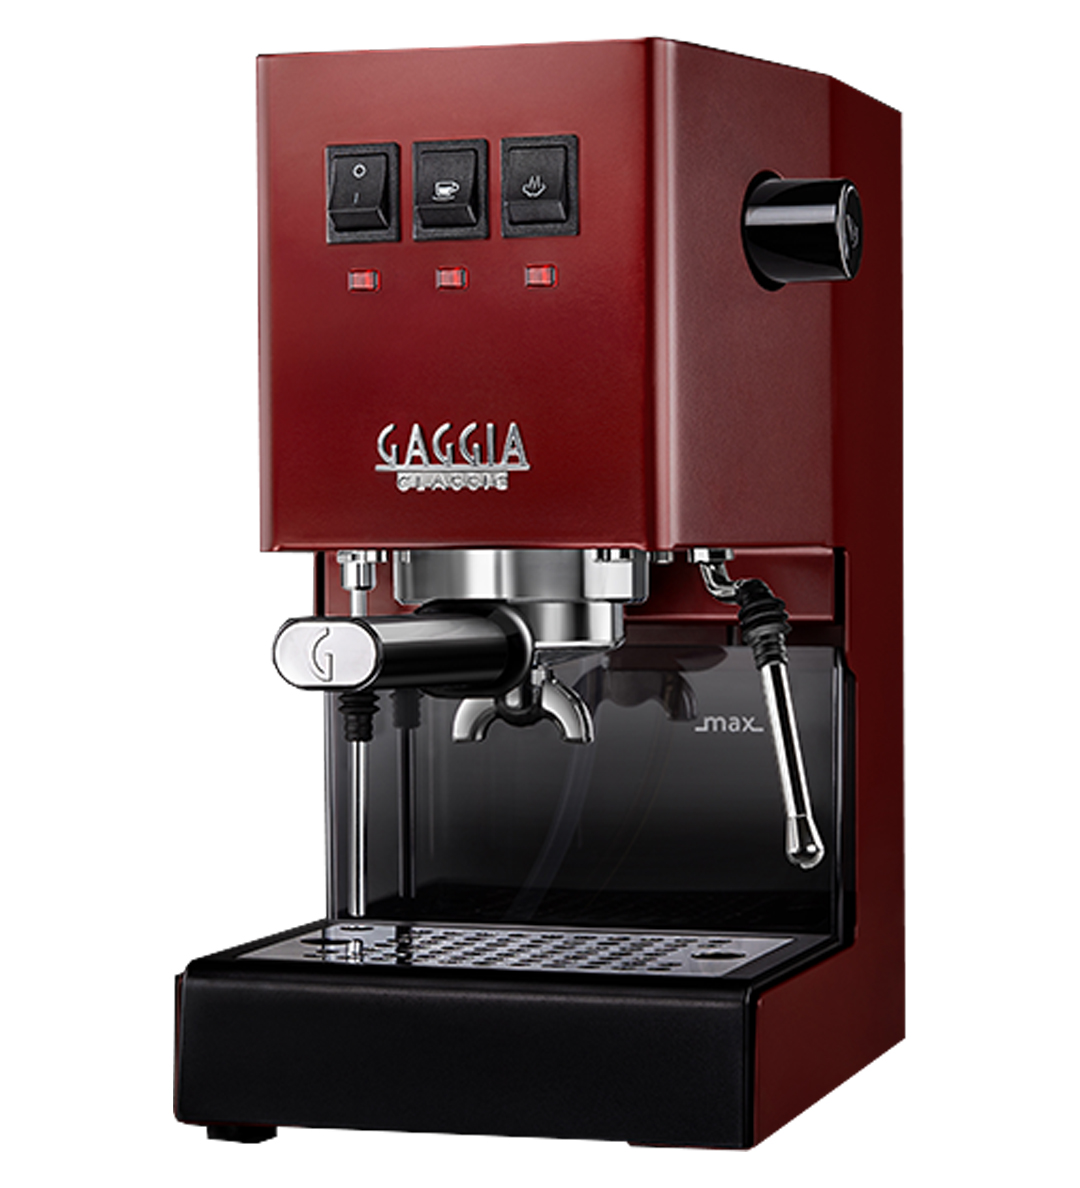 Gaggia Classic Evo Pro Cherry Red Espresso Machine